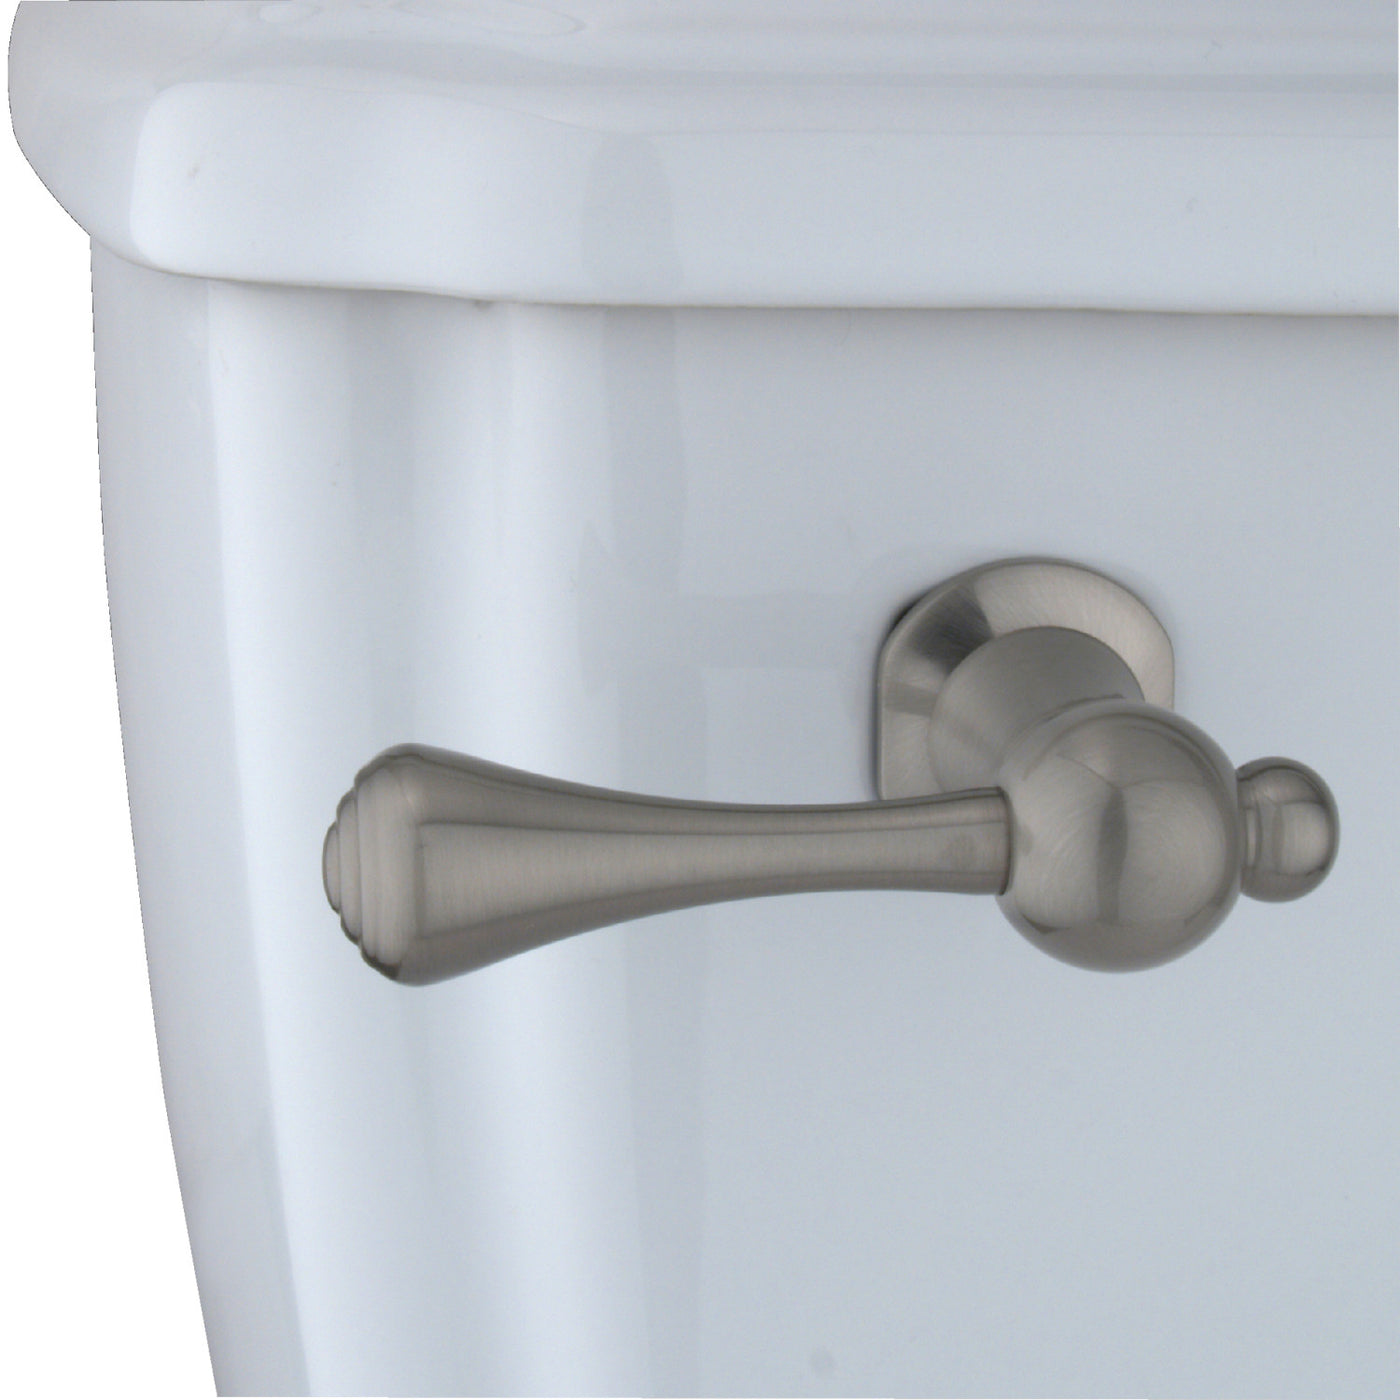 Elements of Design EKTBL8 Toilet Tank Lever, Brushed Nickel